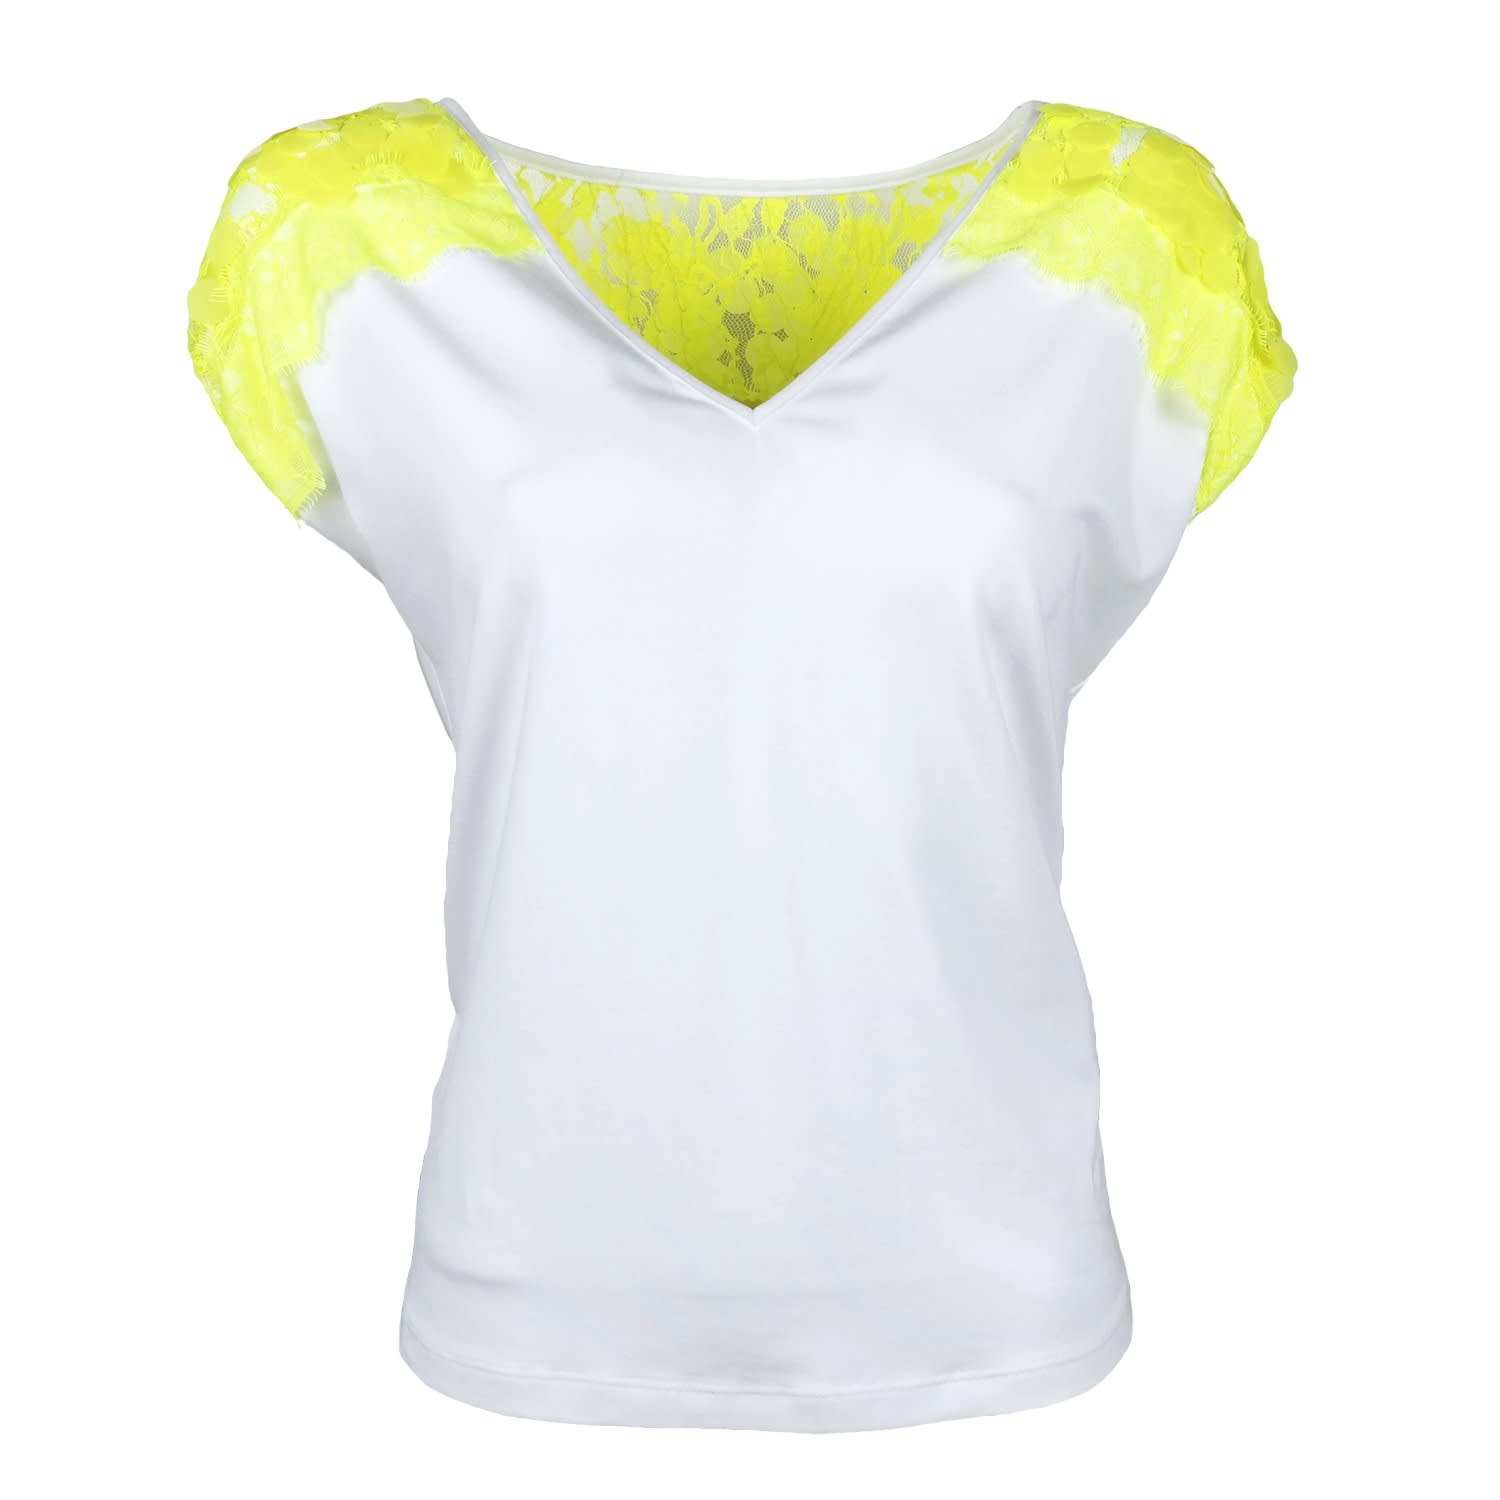 neon yellow sleeveless shirt